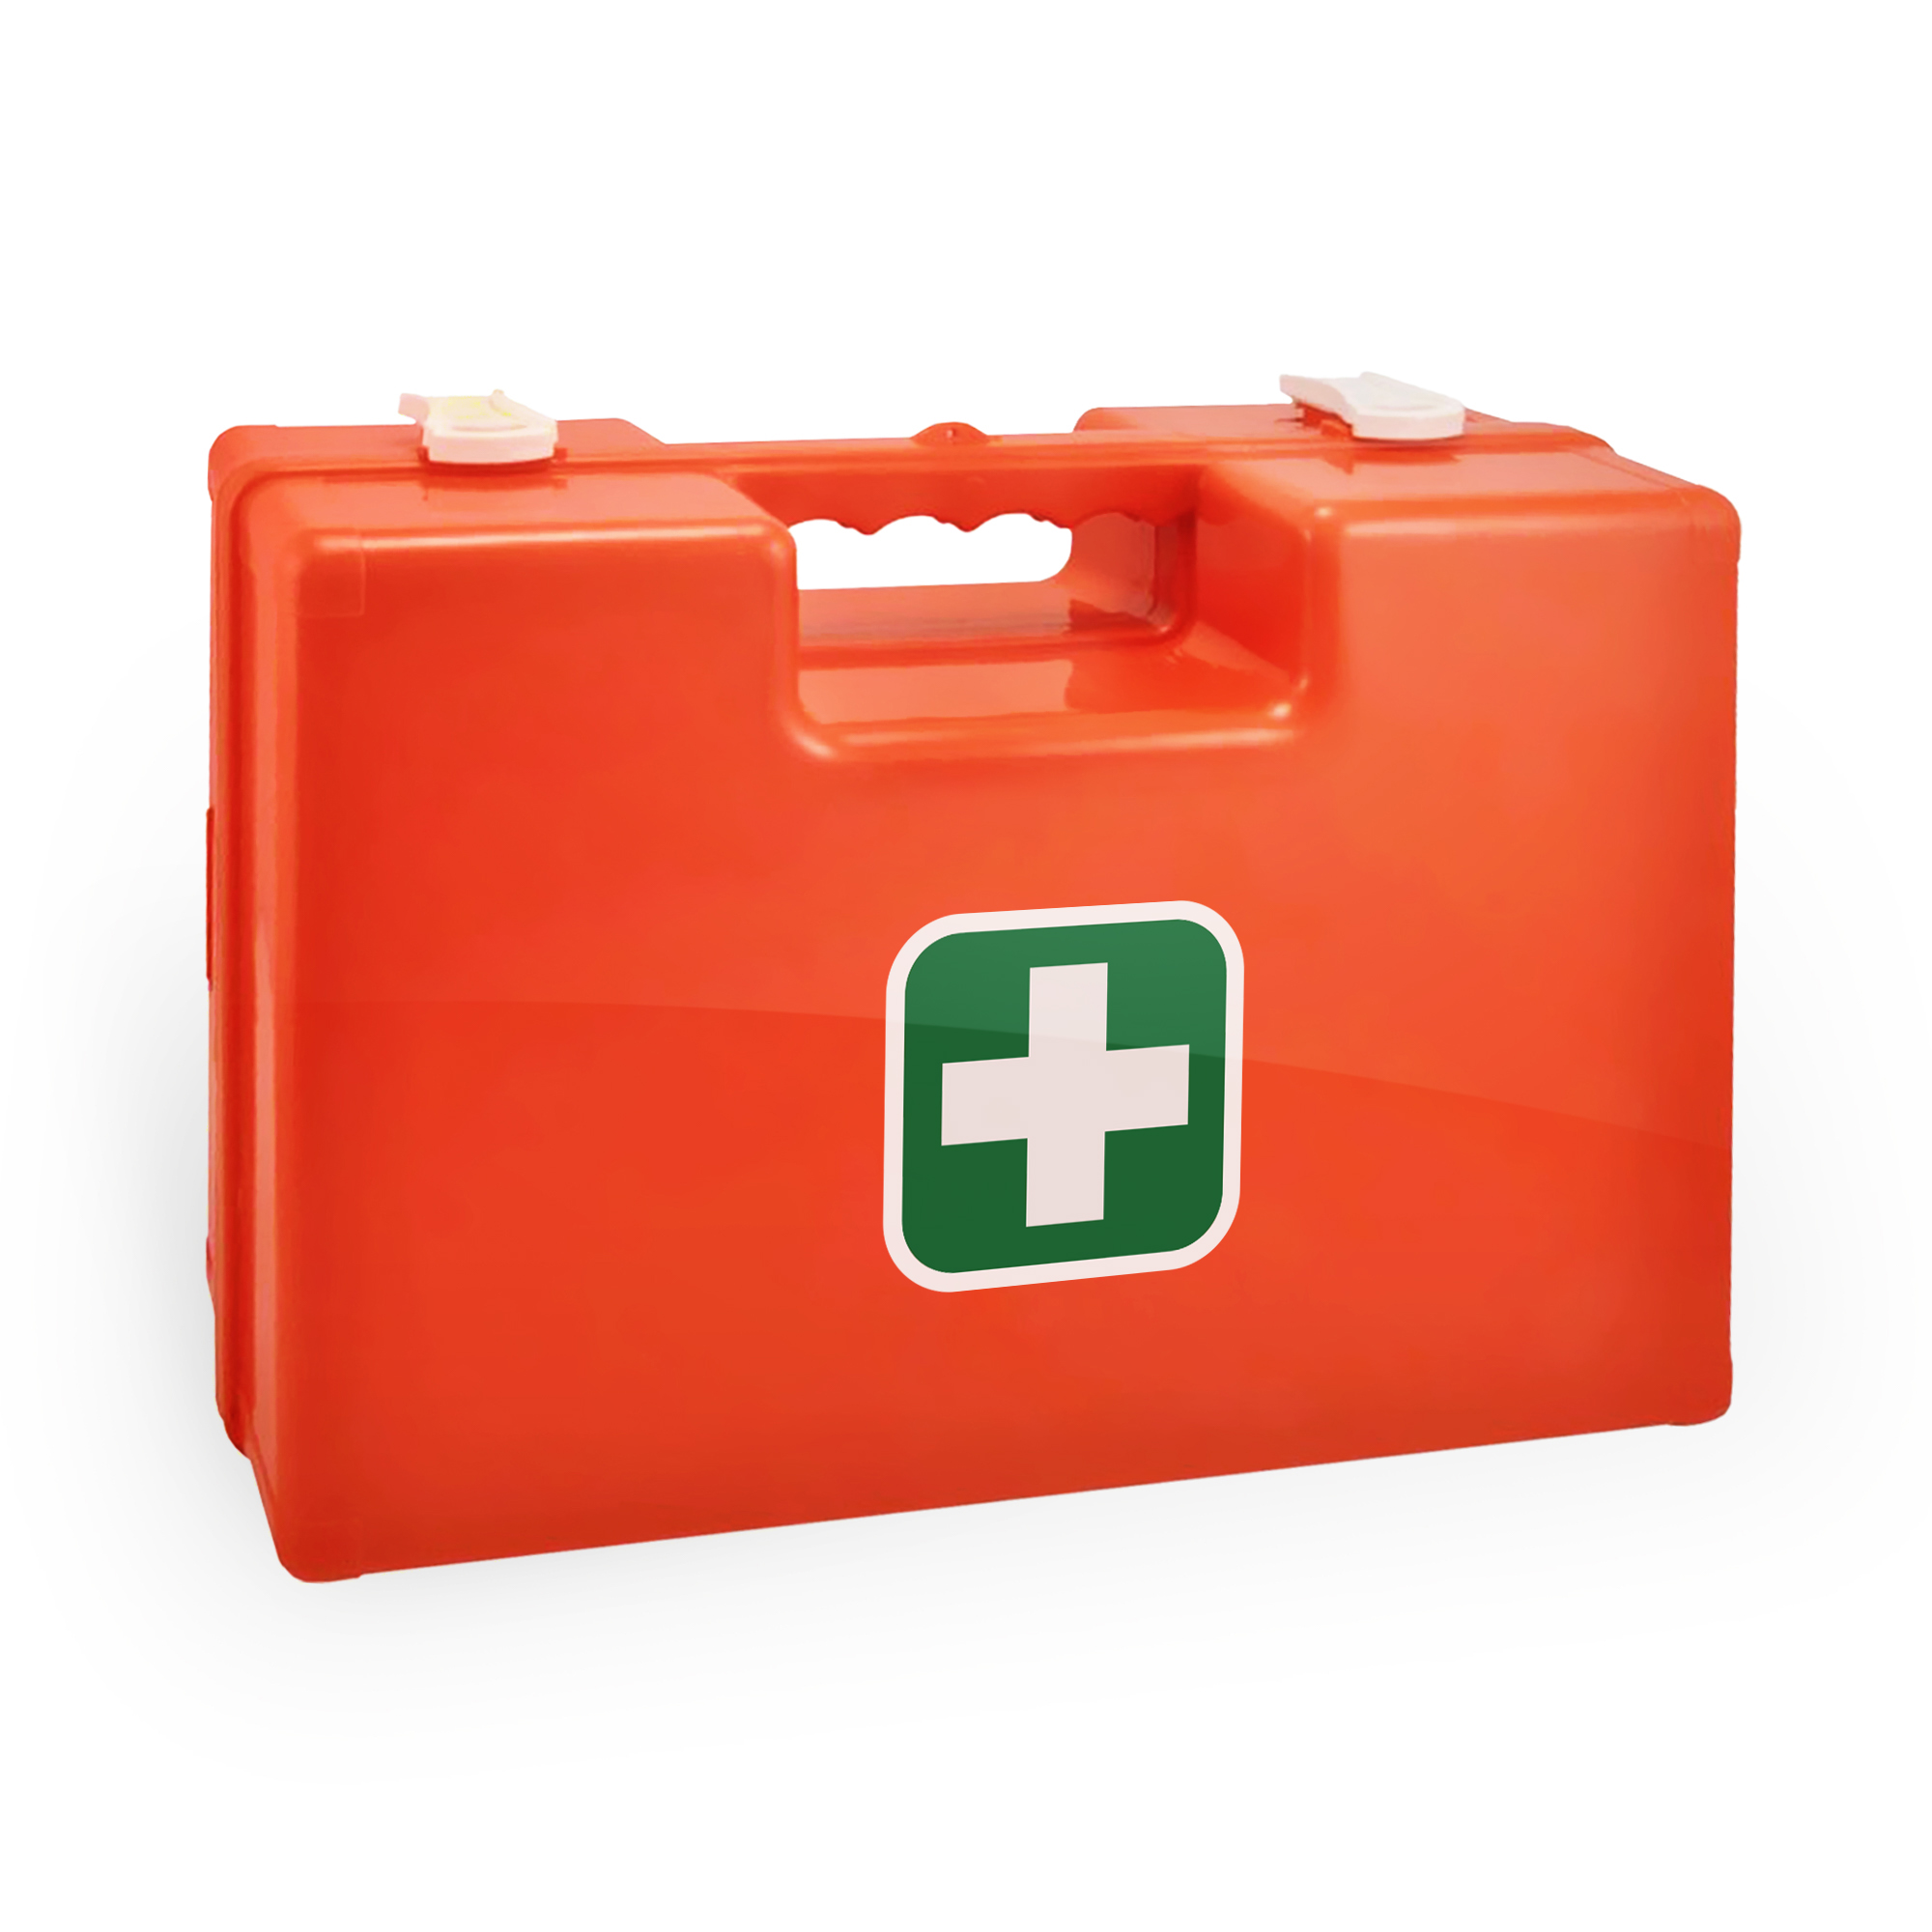 Medicalcorner24 Erste Hilfe Koffer, leer, ABS-Kunststoff, 43x30x14cm